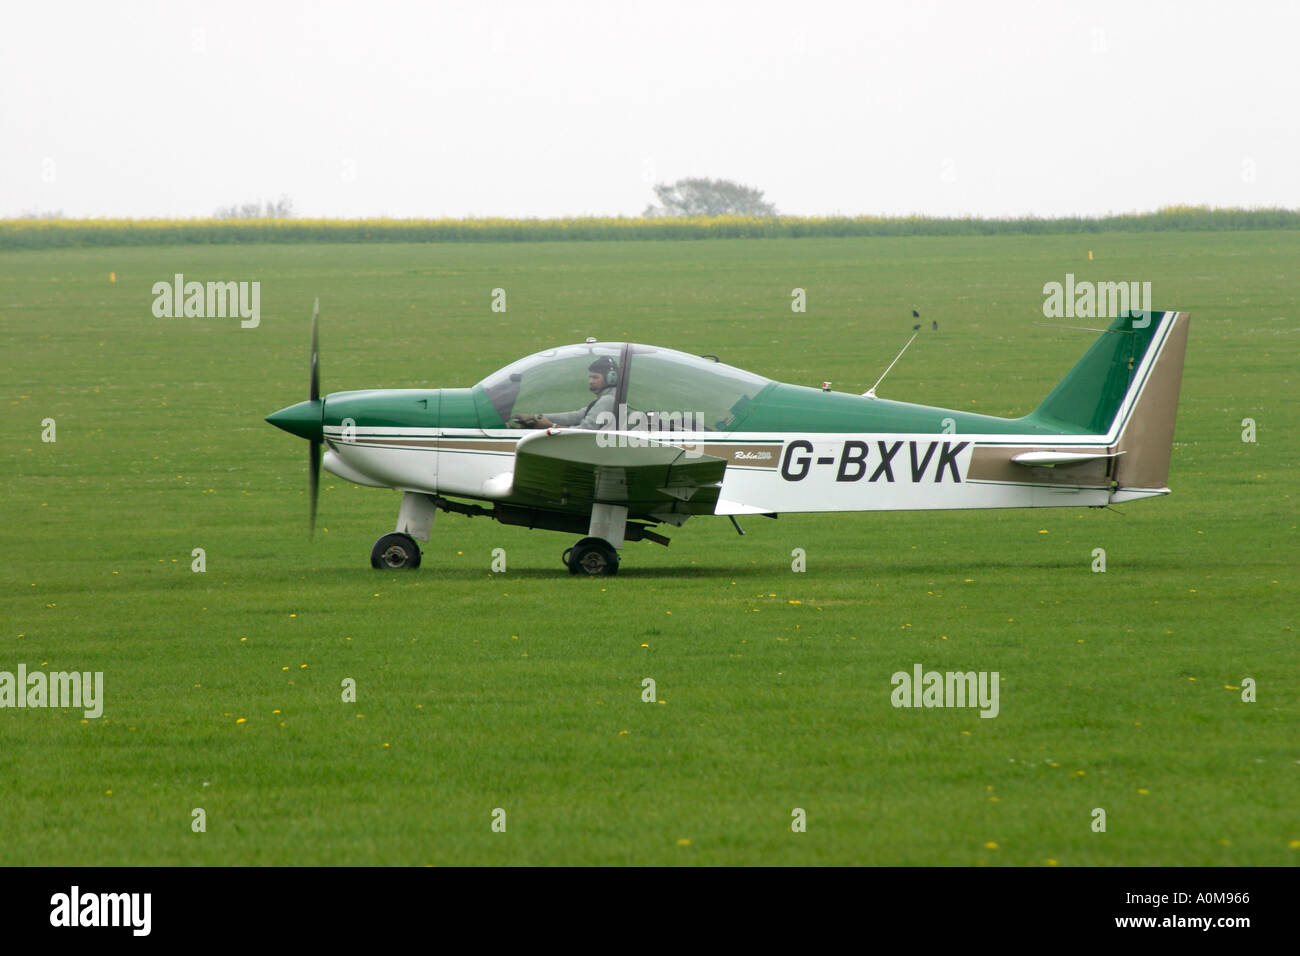 Single Engined Training Aeroplane Stock Photo